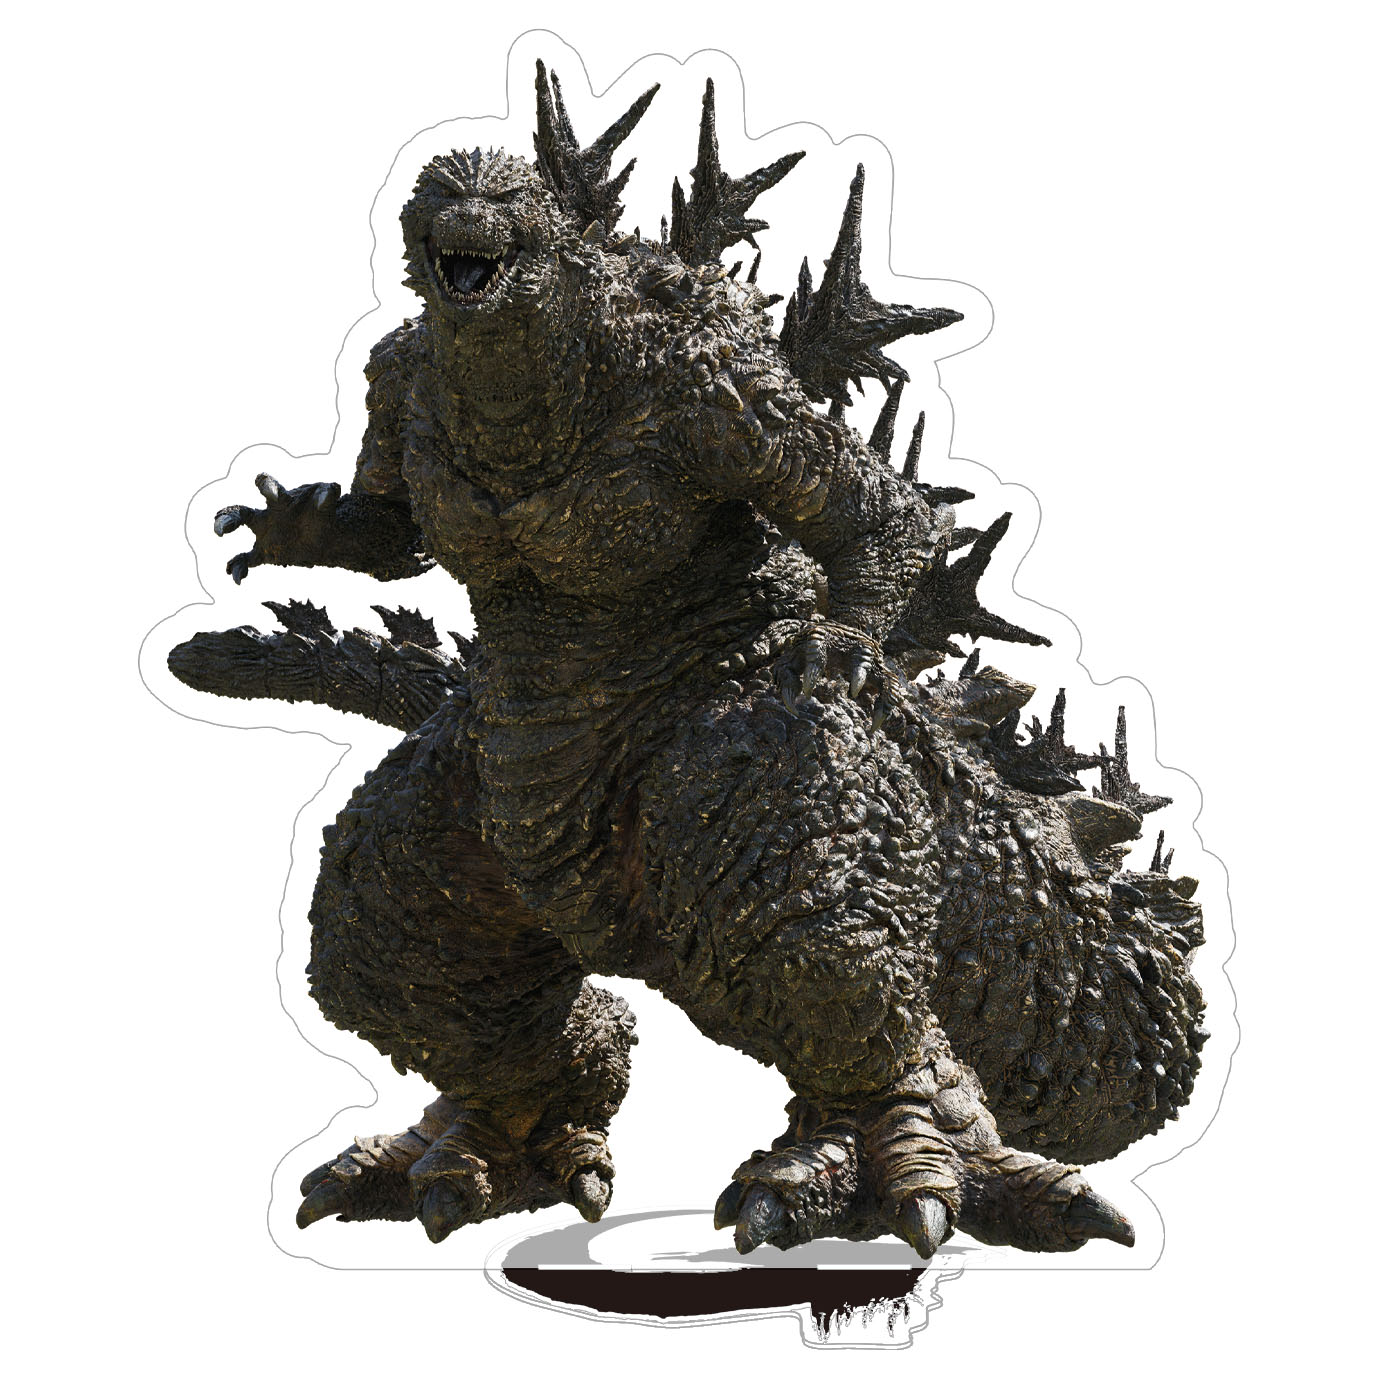 https://www.scifijapan.com/images/Godzilla/GodzillaMinusOne-Merch05.jpg